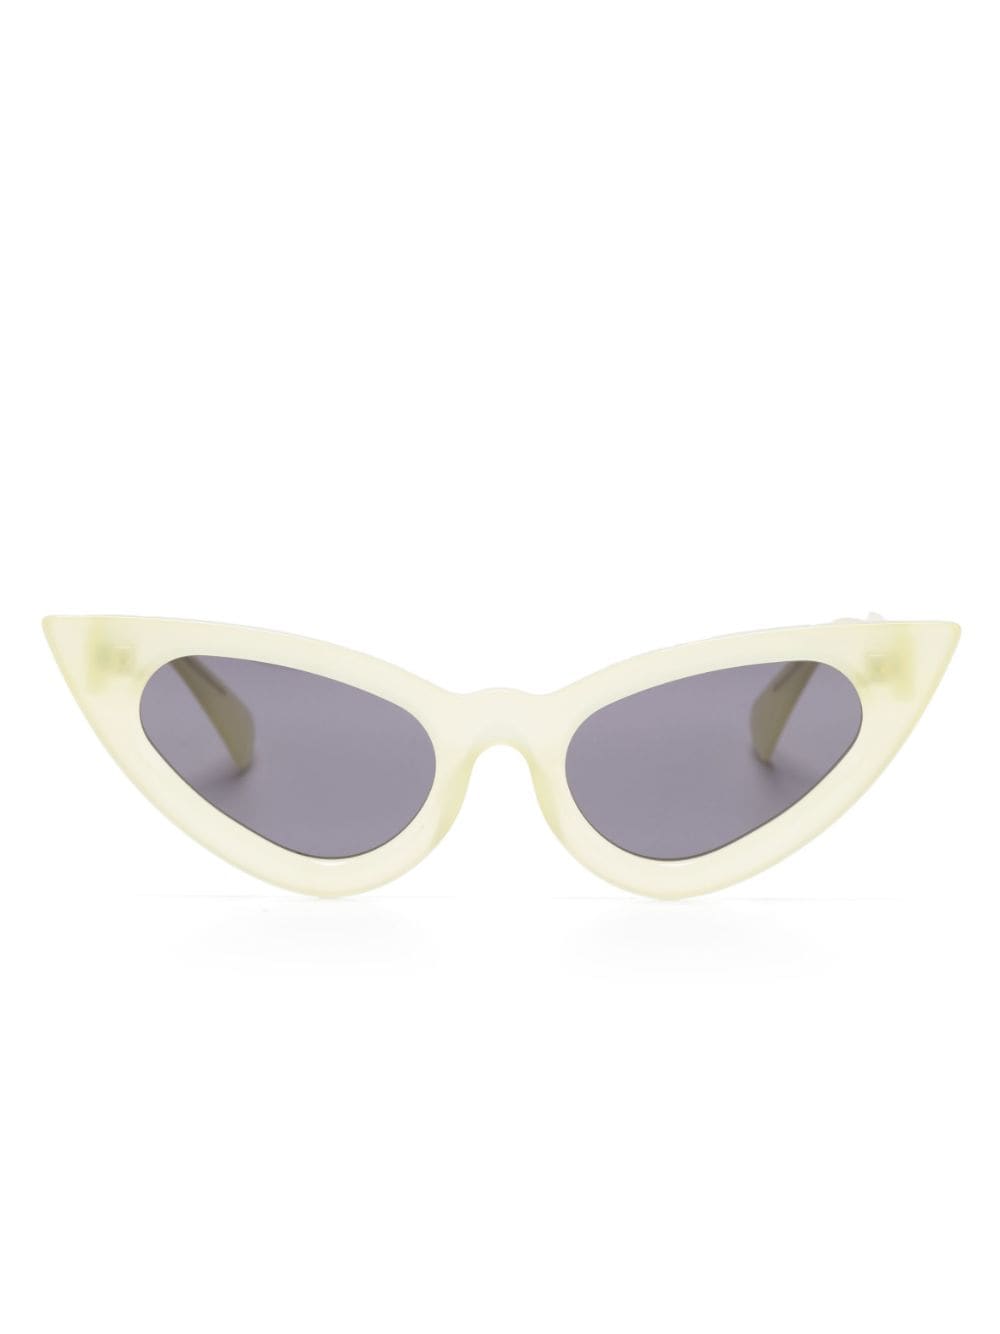 Kuboraum Y3 cat-eye sunglasses - Yellow von Kuboraum